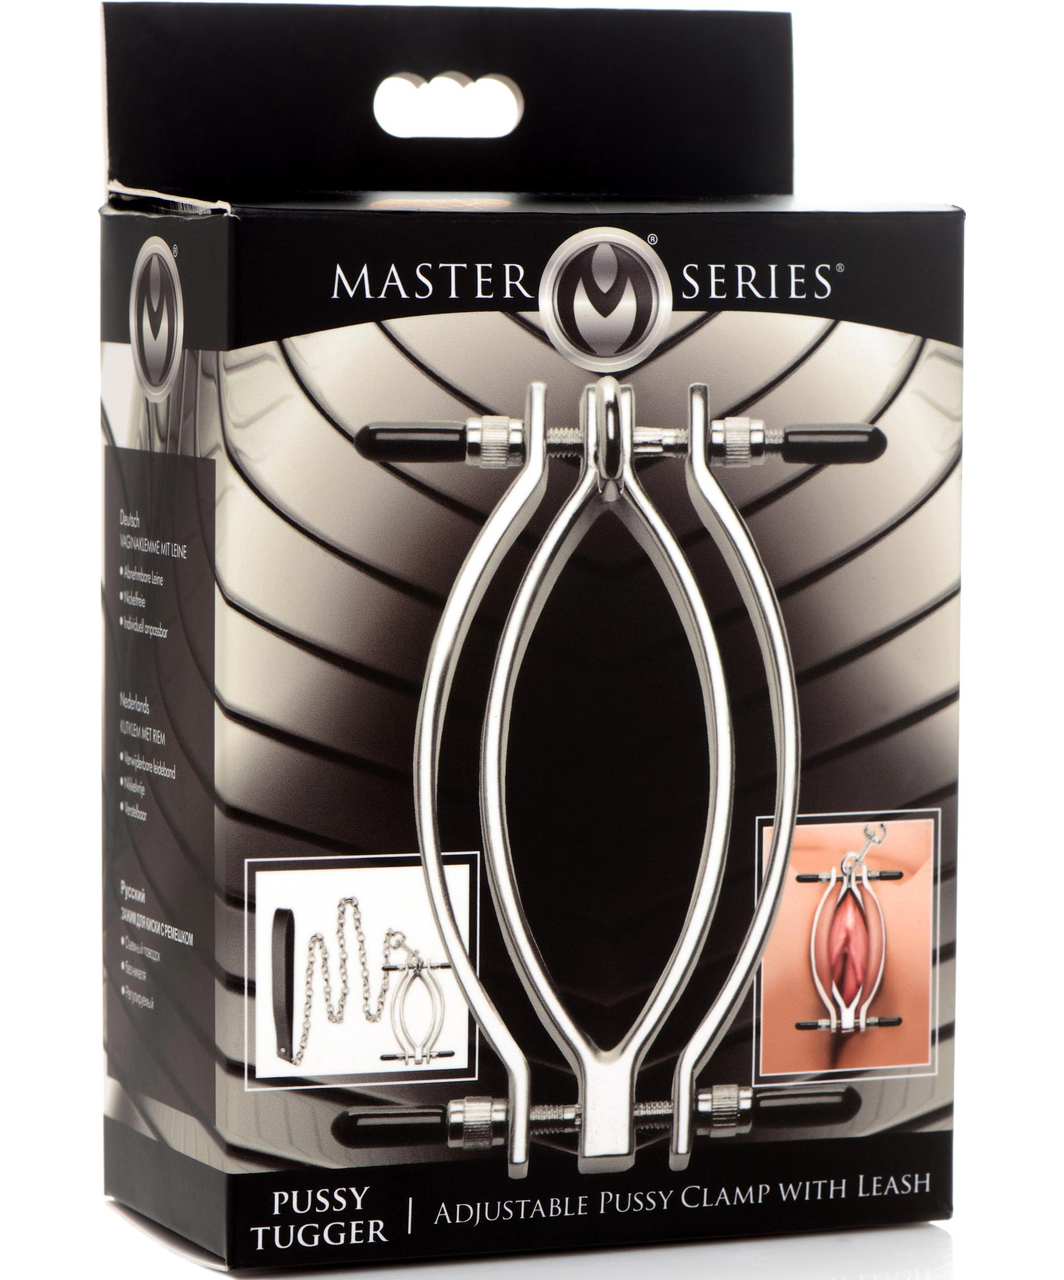 Master Series Pussy Tugger reguleeritav vulva klamber koos rihmaga